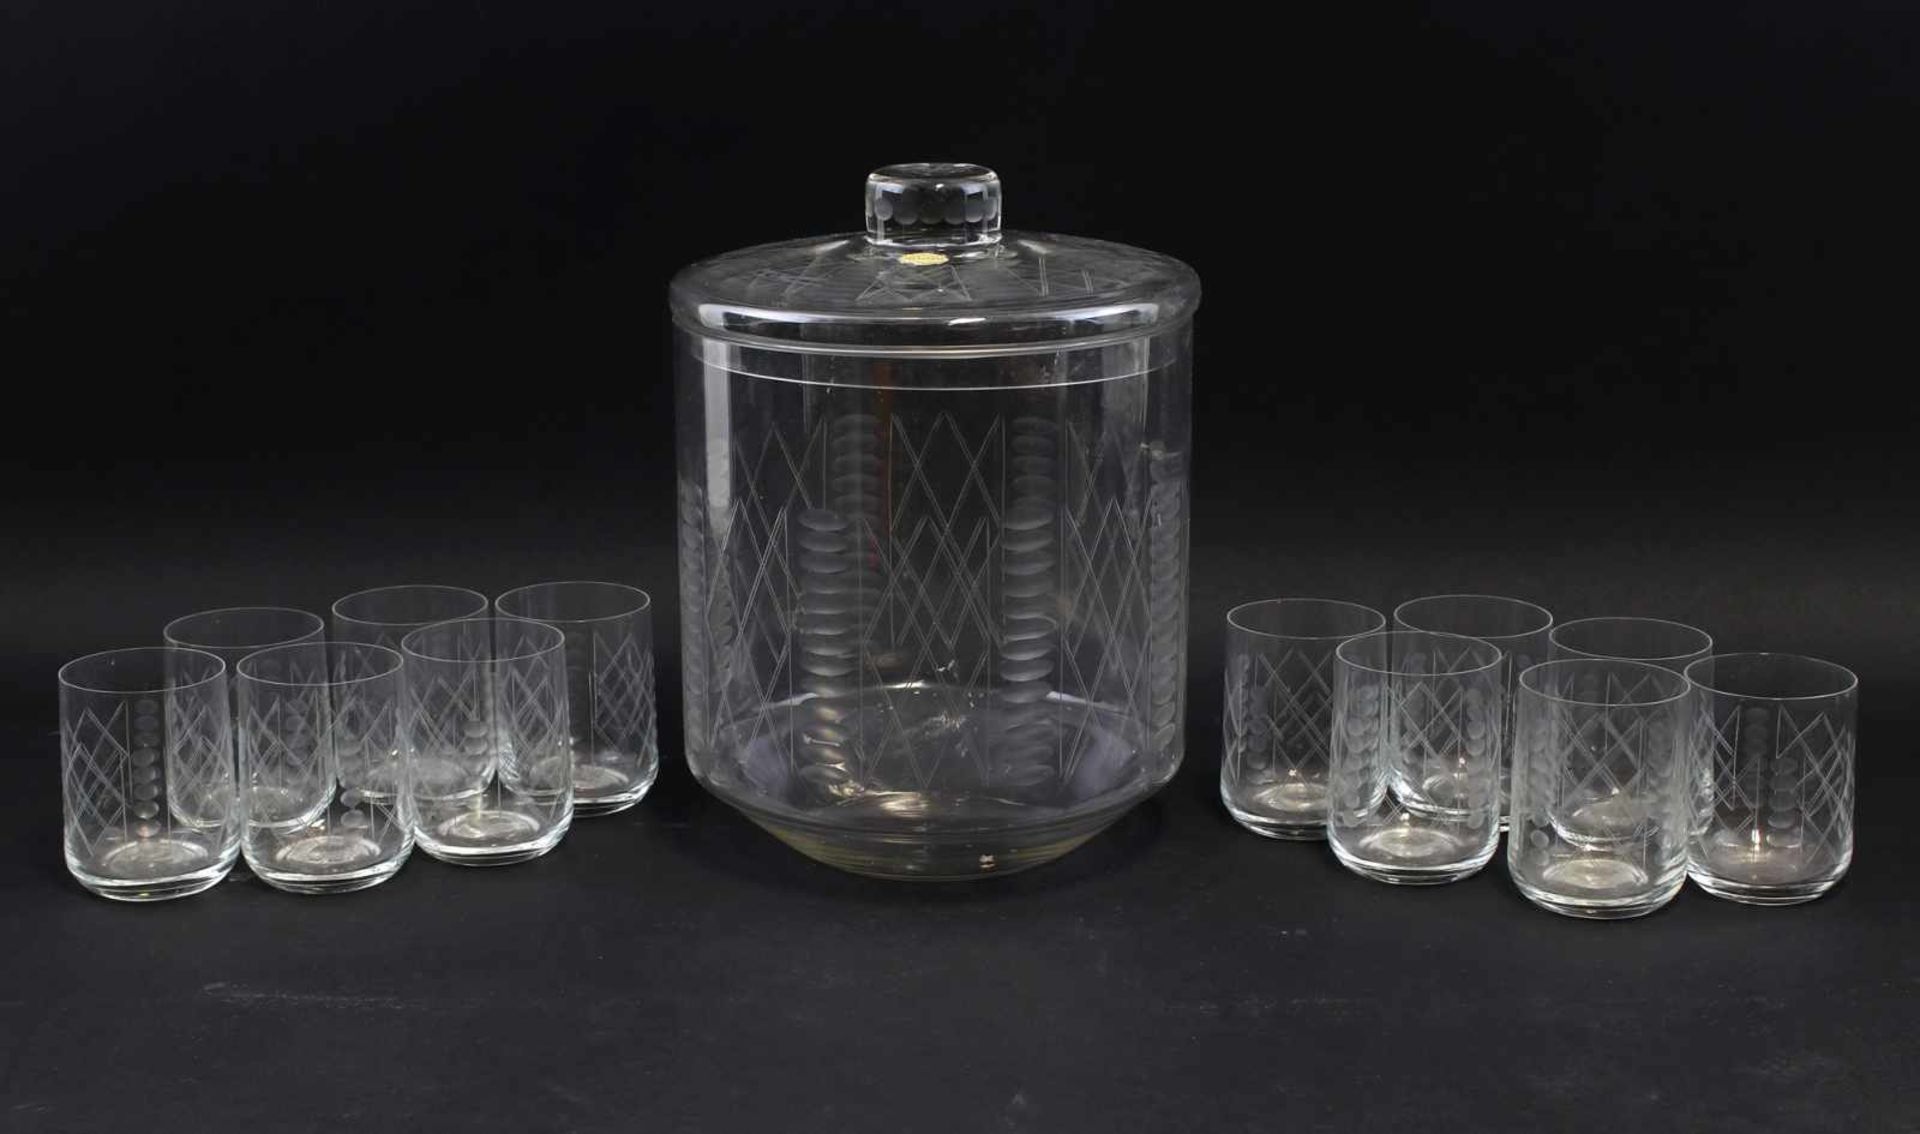 Bowle-Garniturum 1950, gemarkt Ilmenau, farbloses Glas handgeschliffenes geometrisches Dekor,